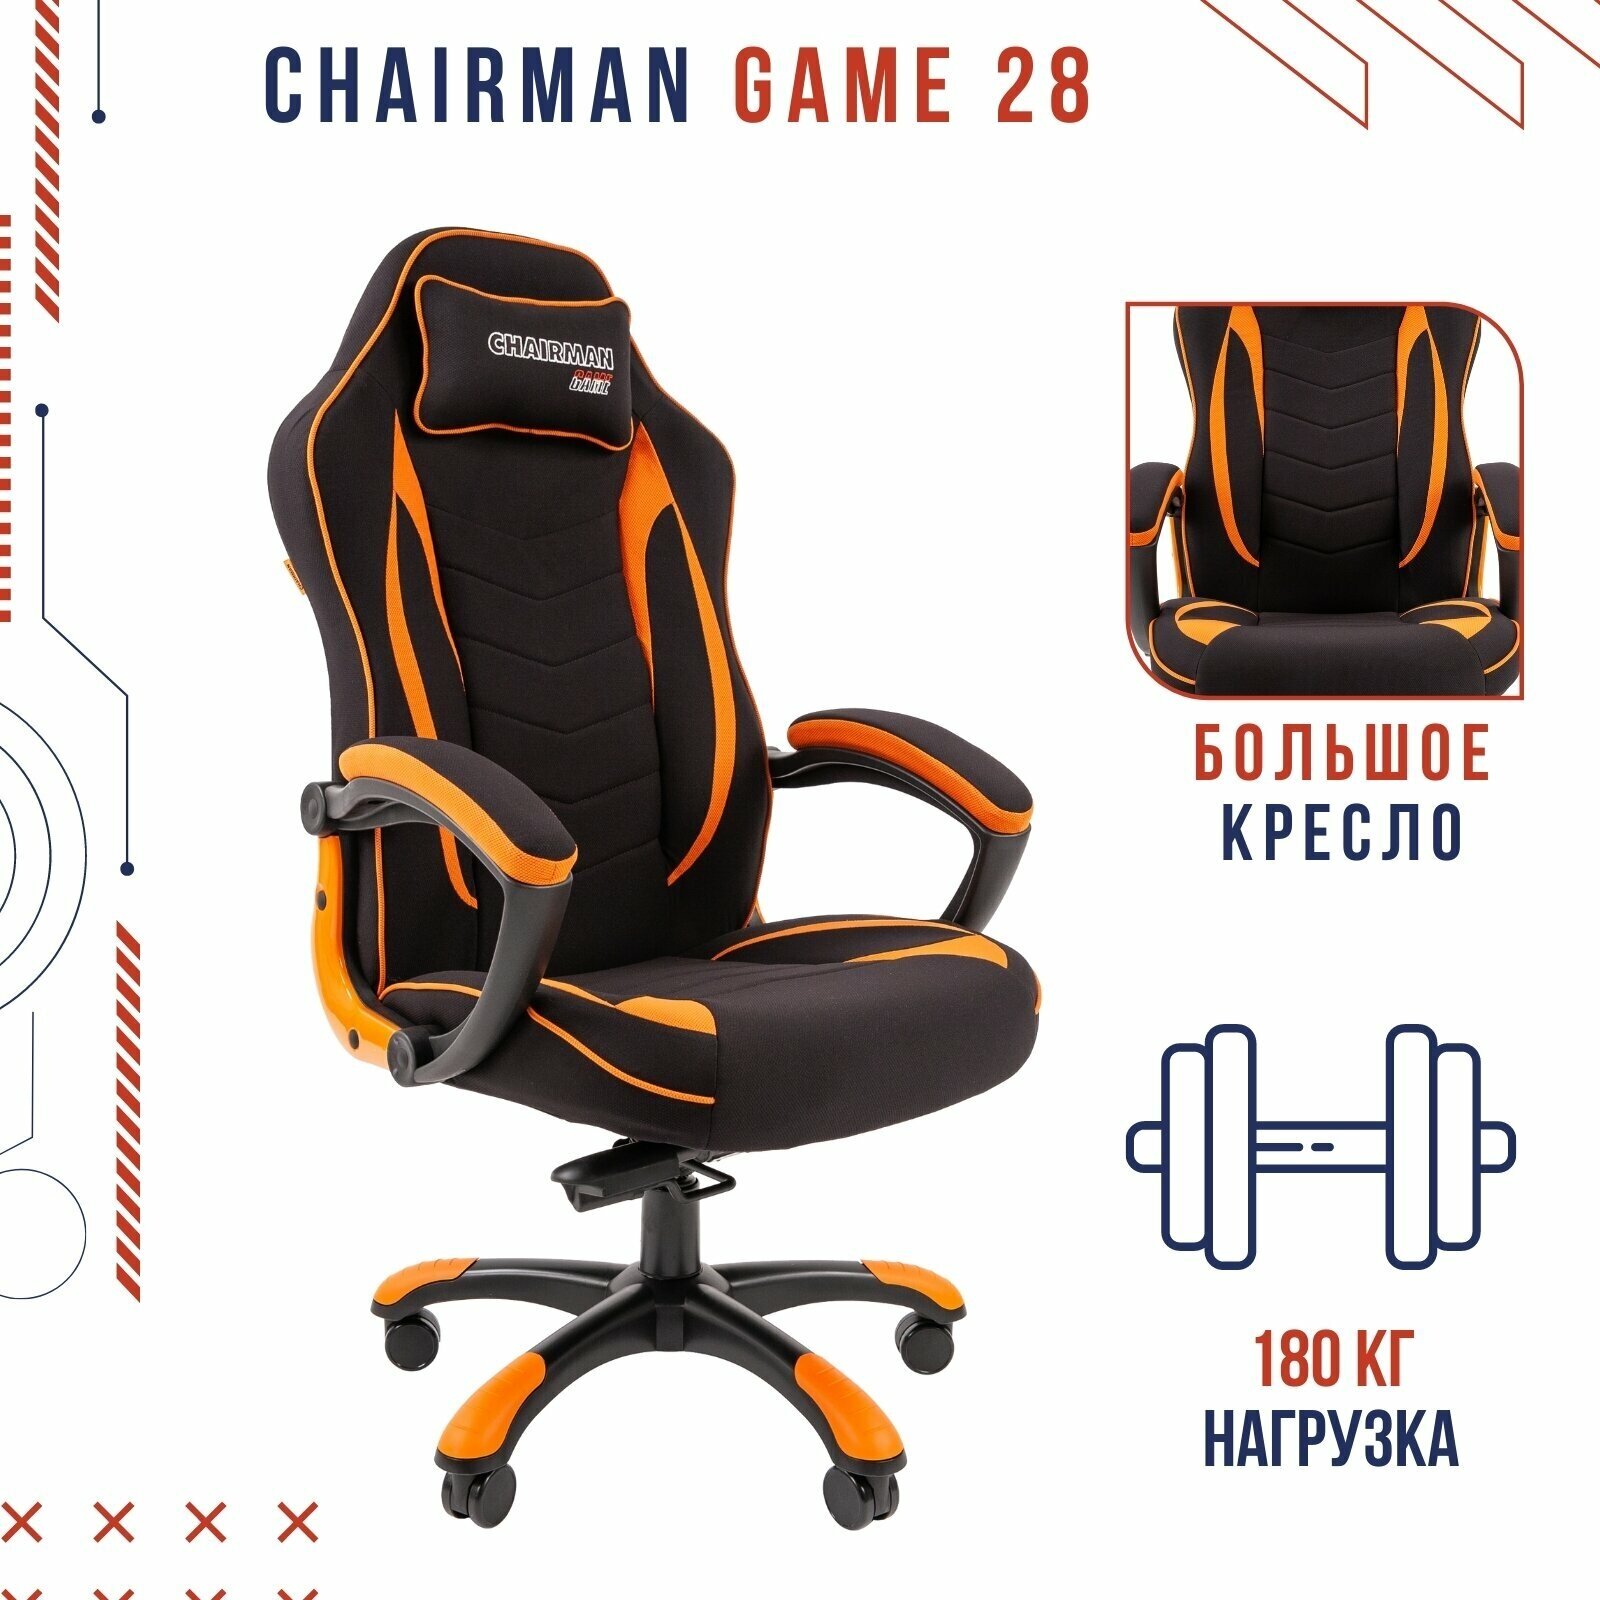 Игровое компьютерное кресло CHAIRMAN GAME 28, ткань, черный/оранжевый